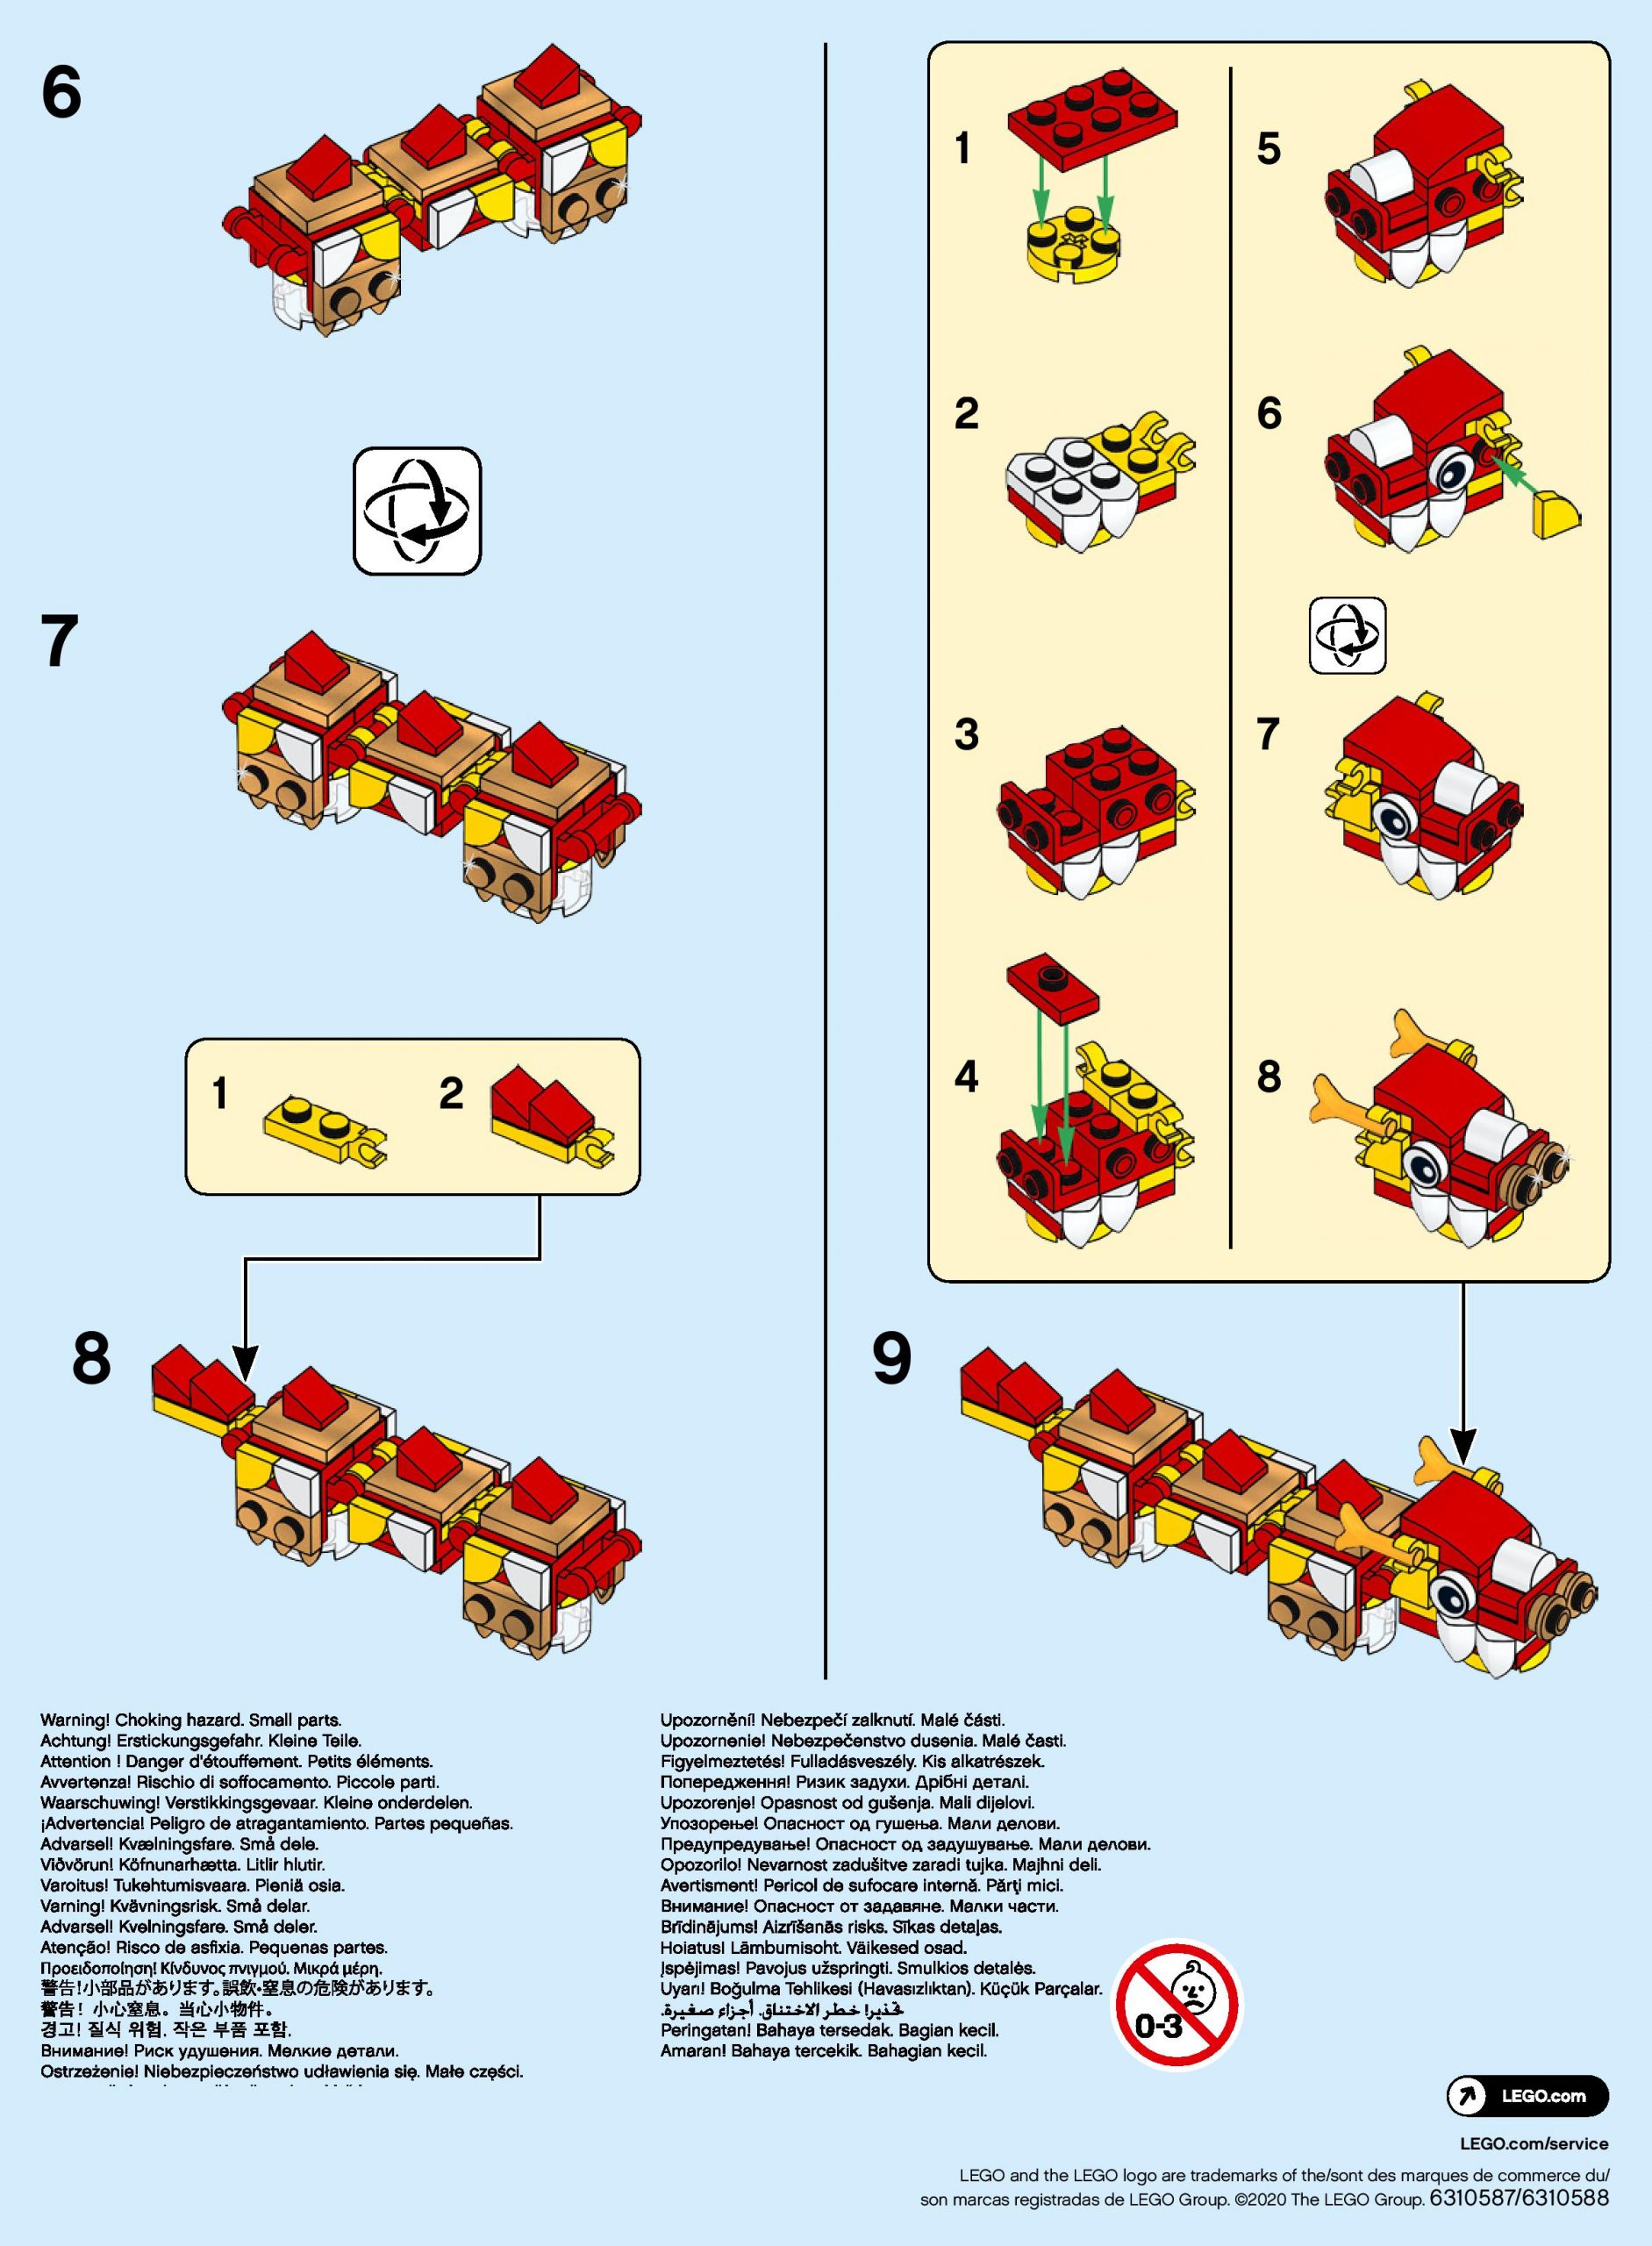 LEGO Lunar Year (40395) Building Instructions The Brick Fan